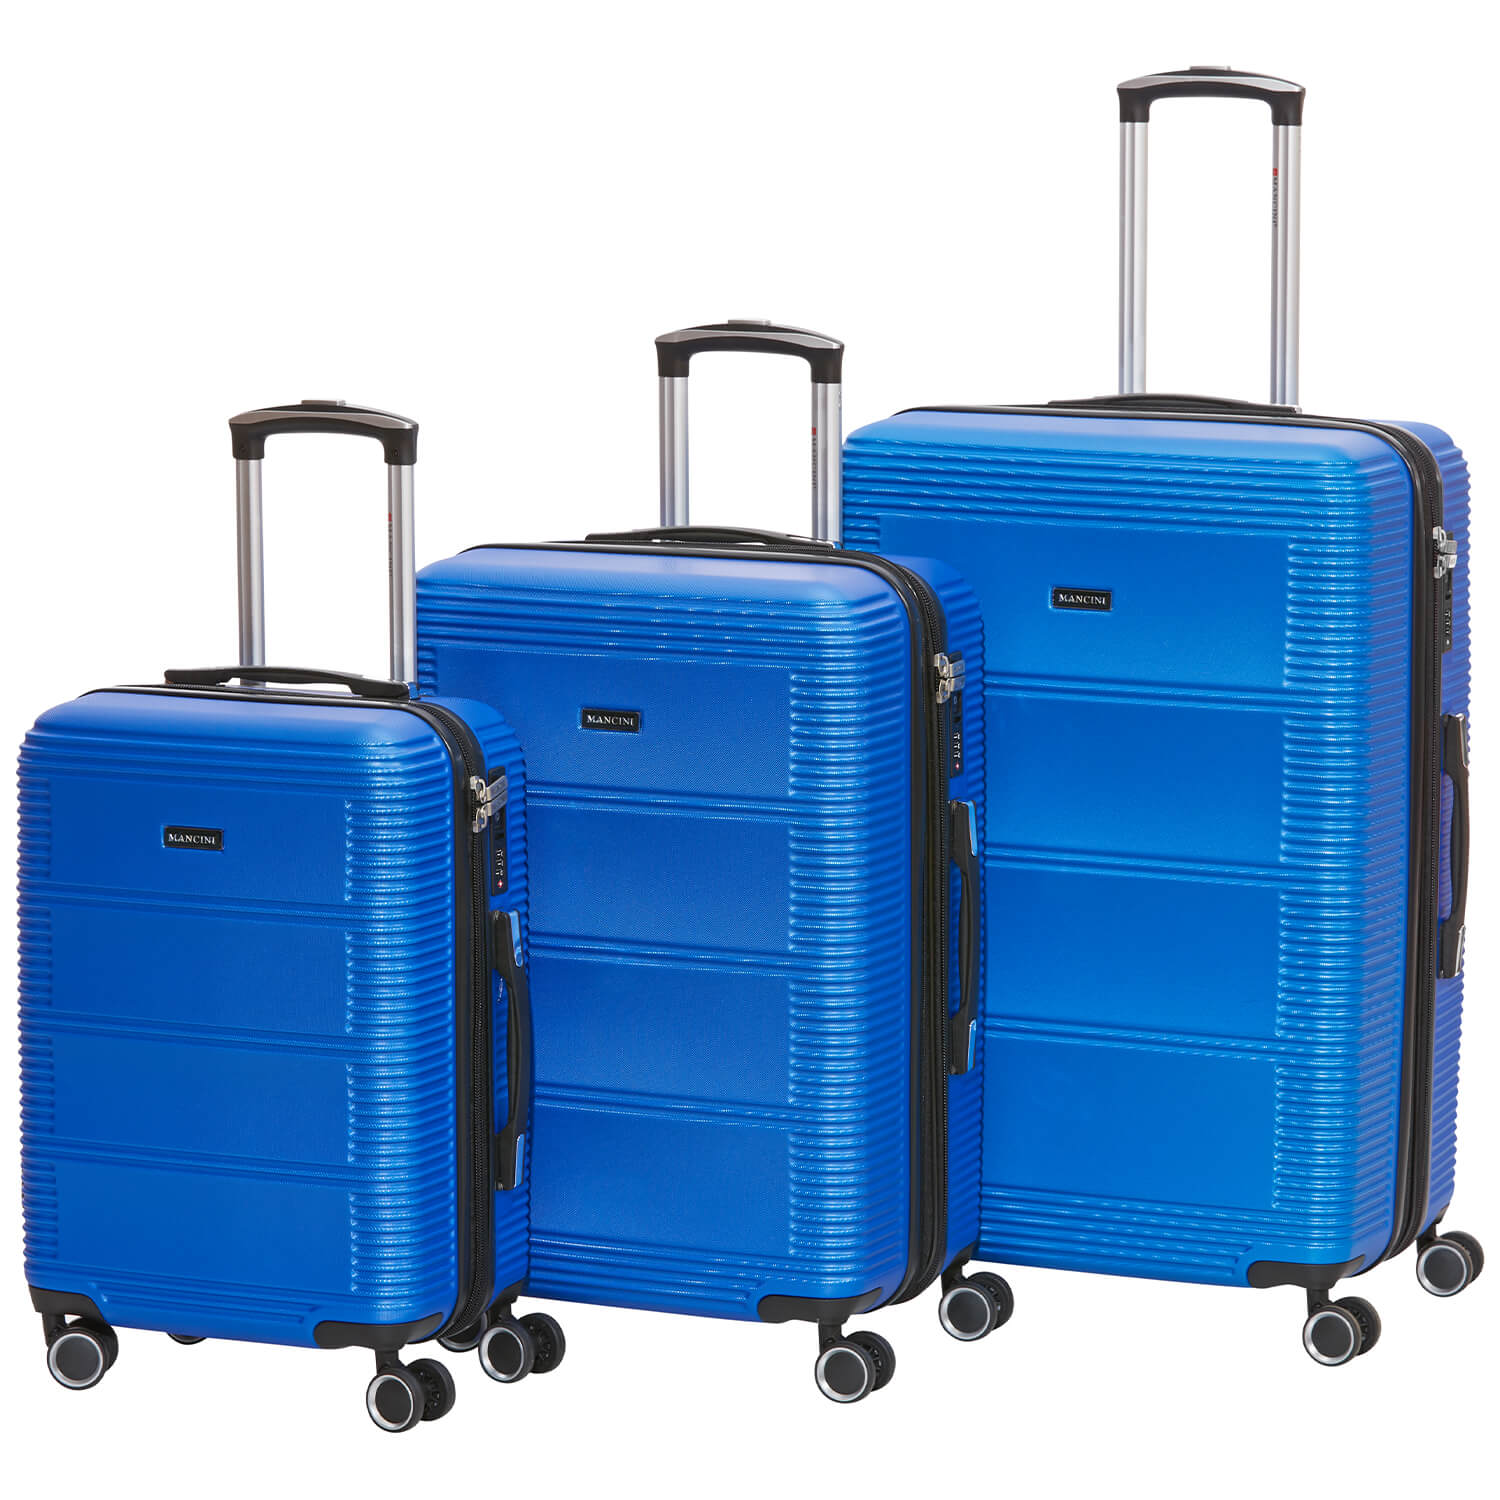 Brisbane Collection Lightweight Spinner Luggage Set